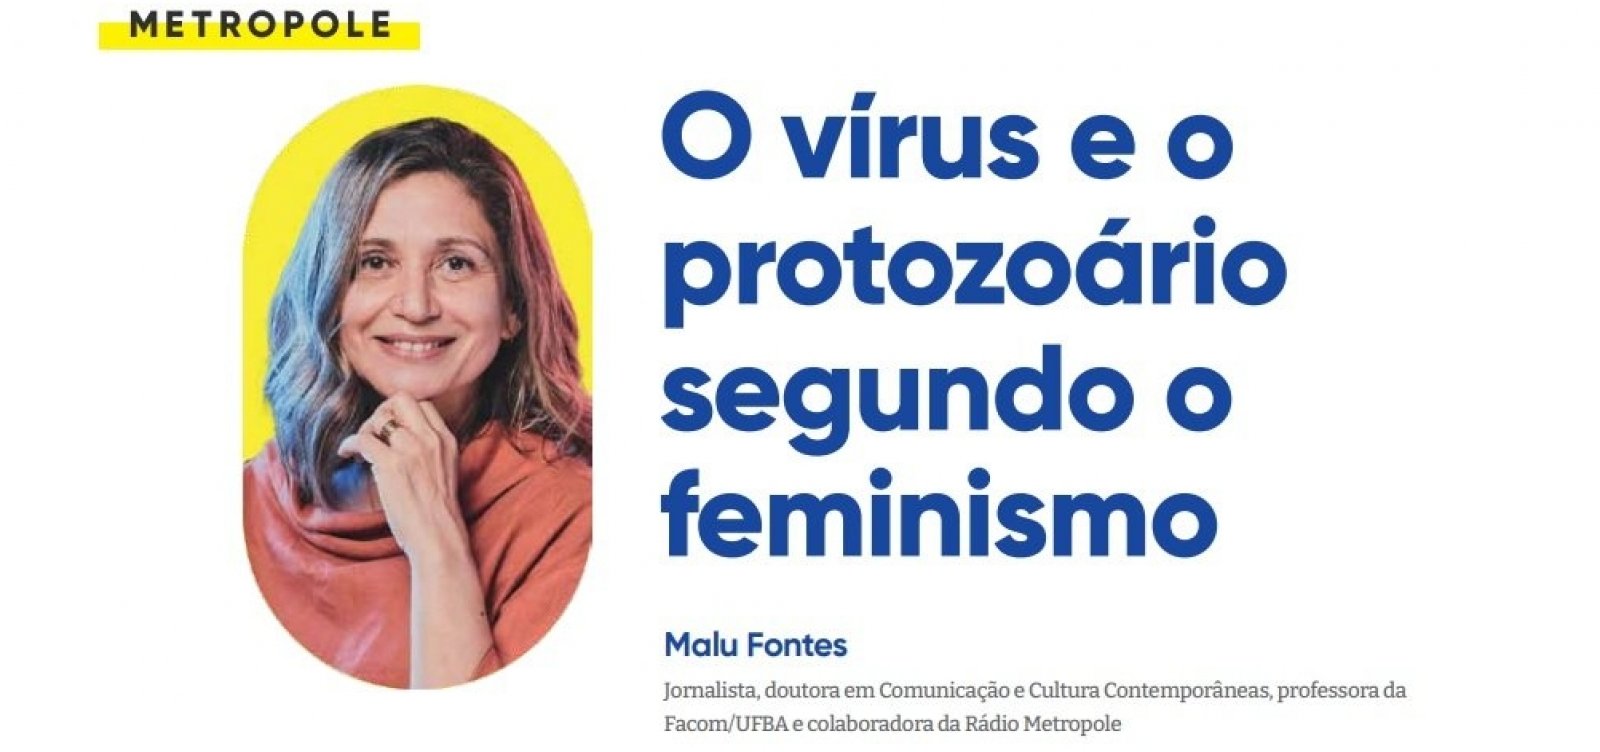 O vírus e o protozoário segundo o feminismo